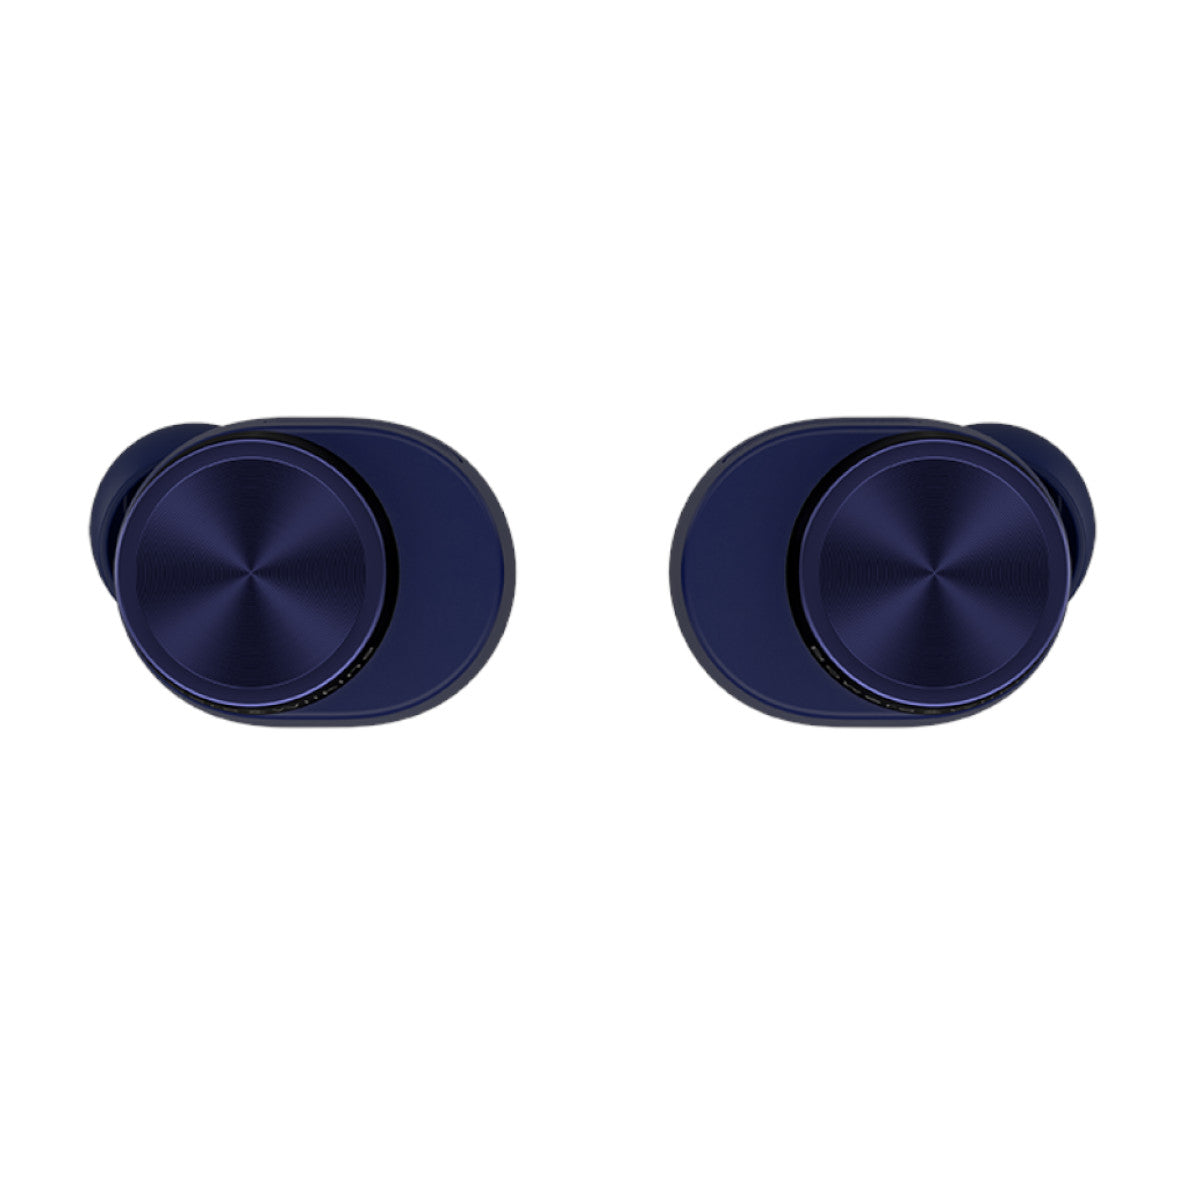 Bowers & Wilkins (B&W) Pi7 S2 In-ear True Wireless Earbuds (Midnight Blue)